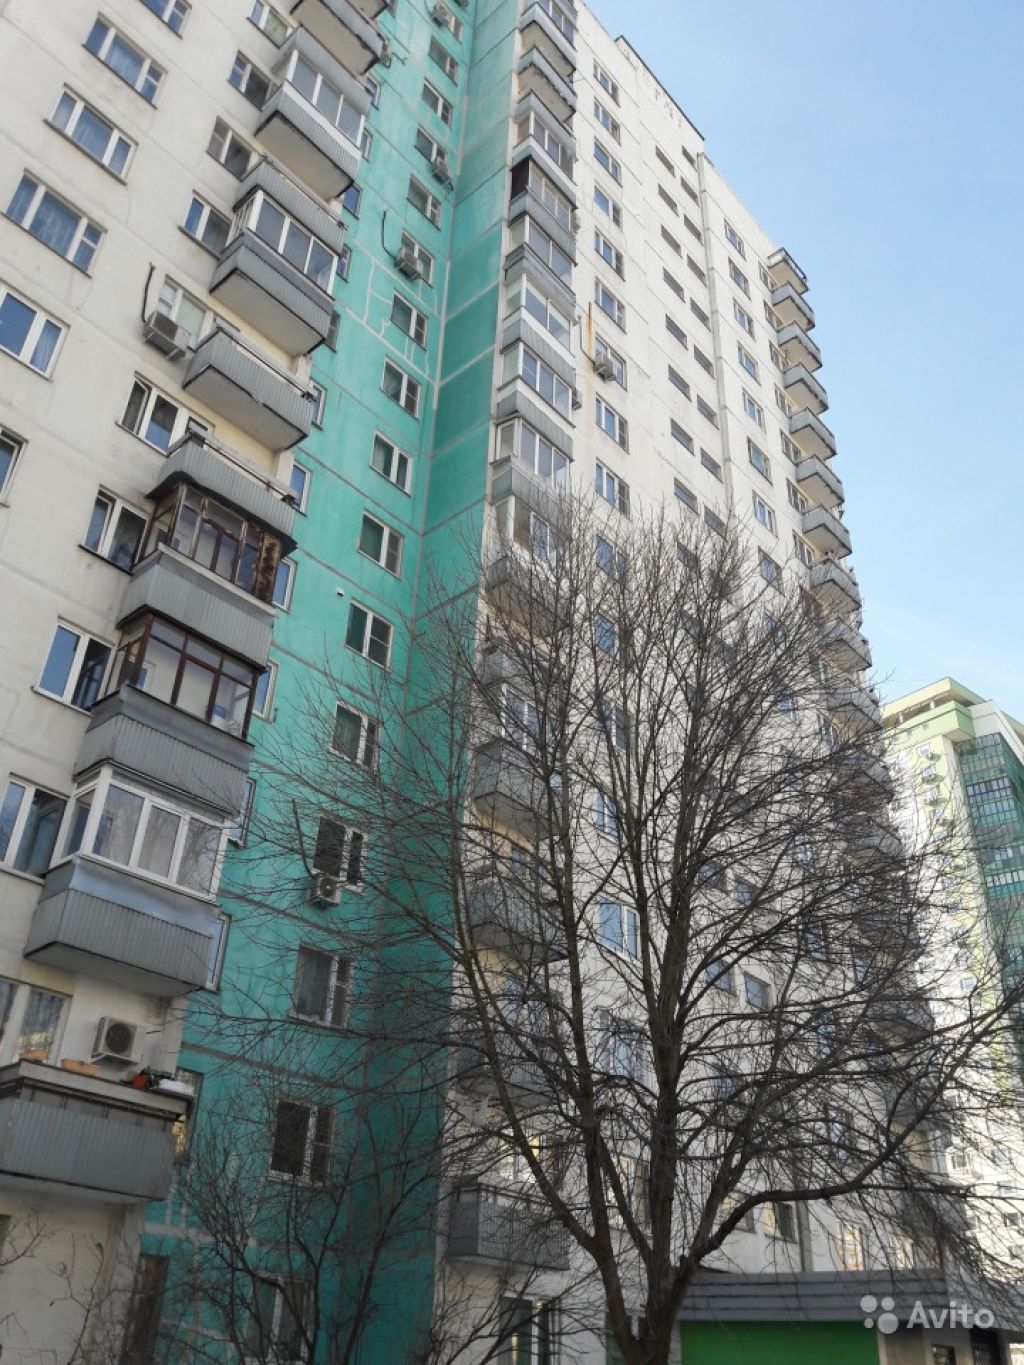 Продам квартиру 3-к квартира 74 м² на 15 этаже 17-этажного панельного дома в Москве. Фото 1